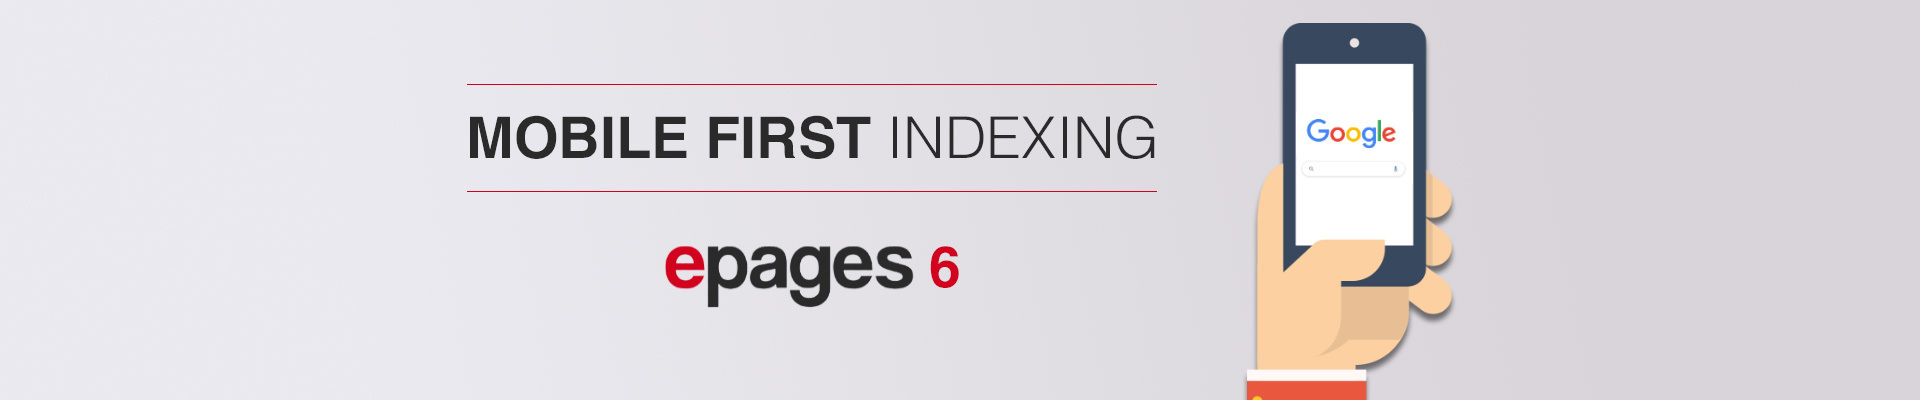 Lojas epages base 6 responsivas para indexação Google "Mobile-First"